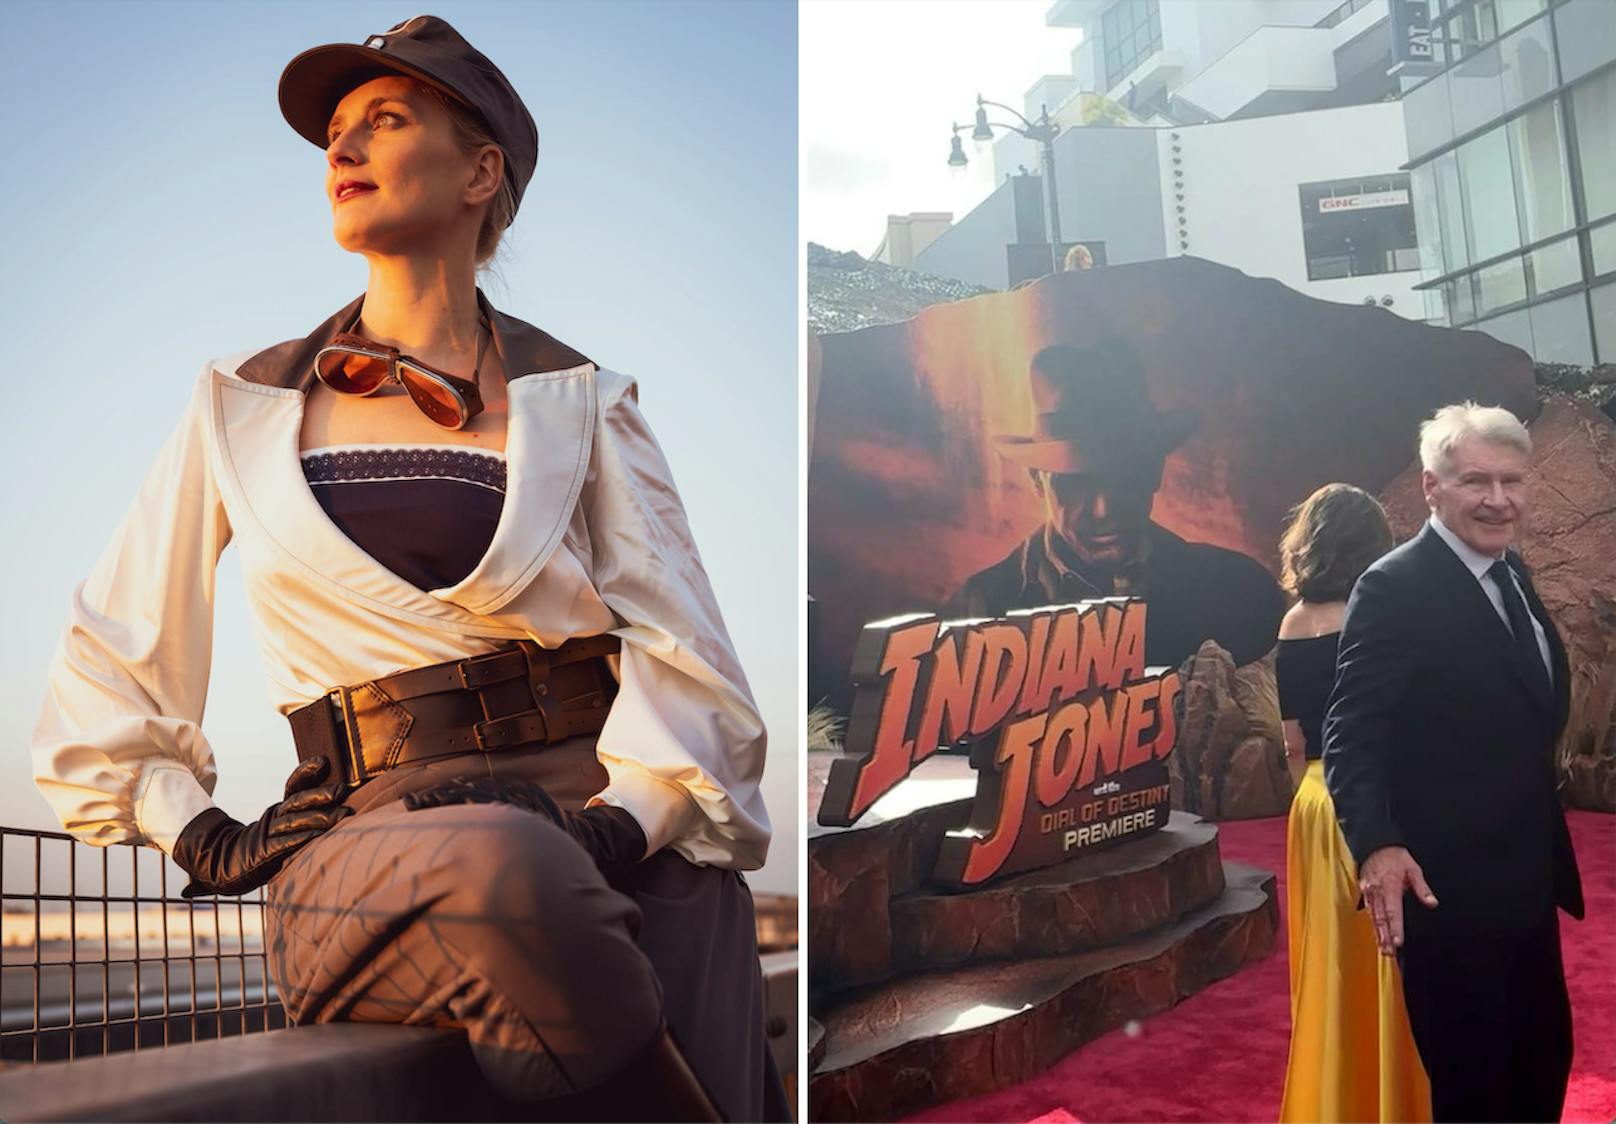 Kostüm brachte Österreicherin zu "Indiana Jones"